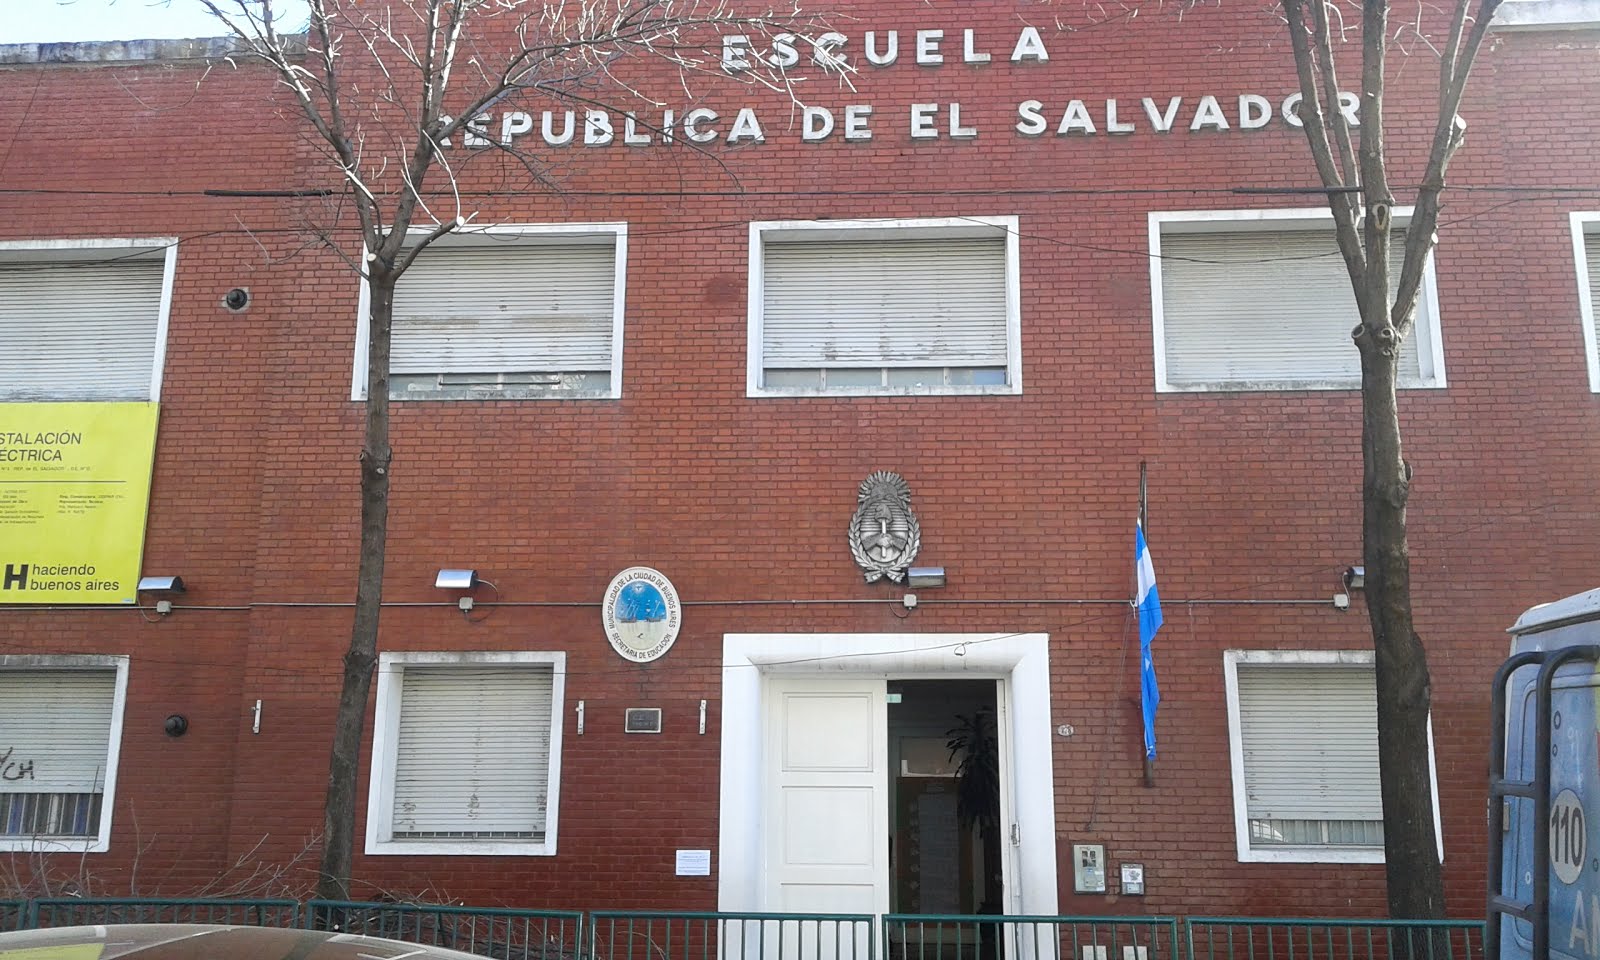 Escuela "República de El Salvador"